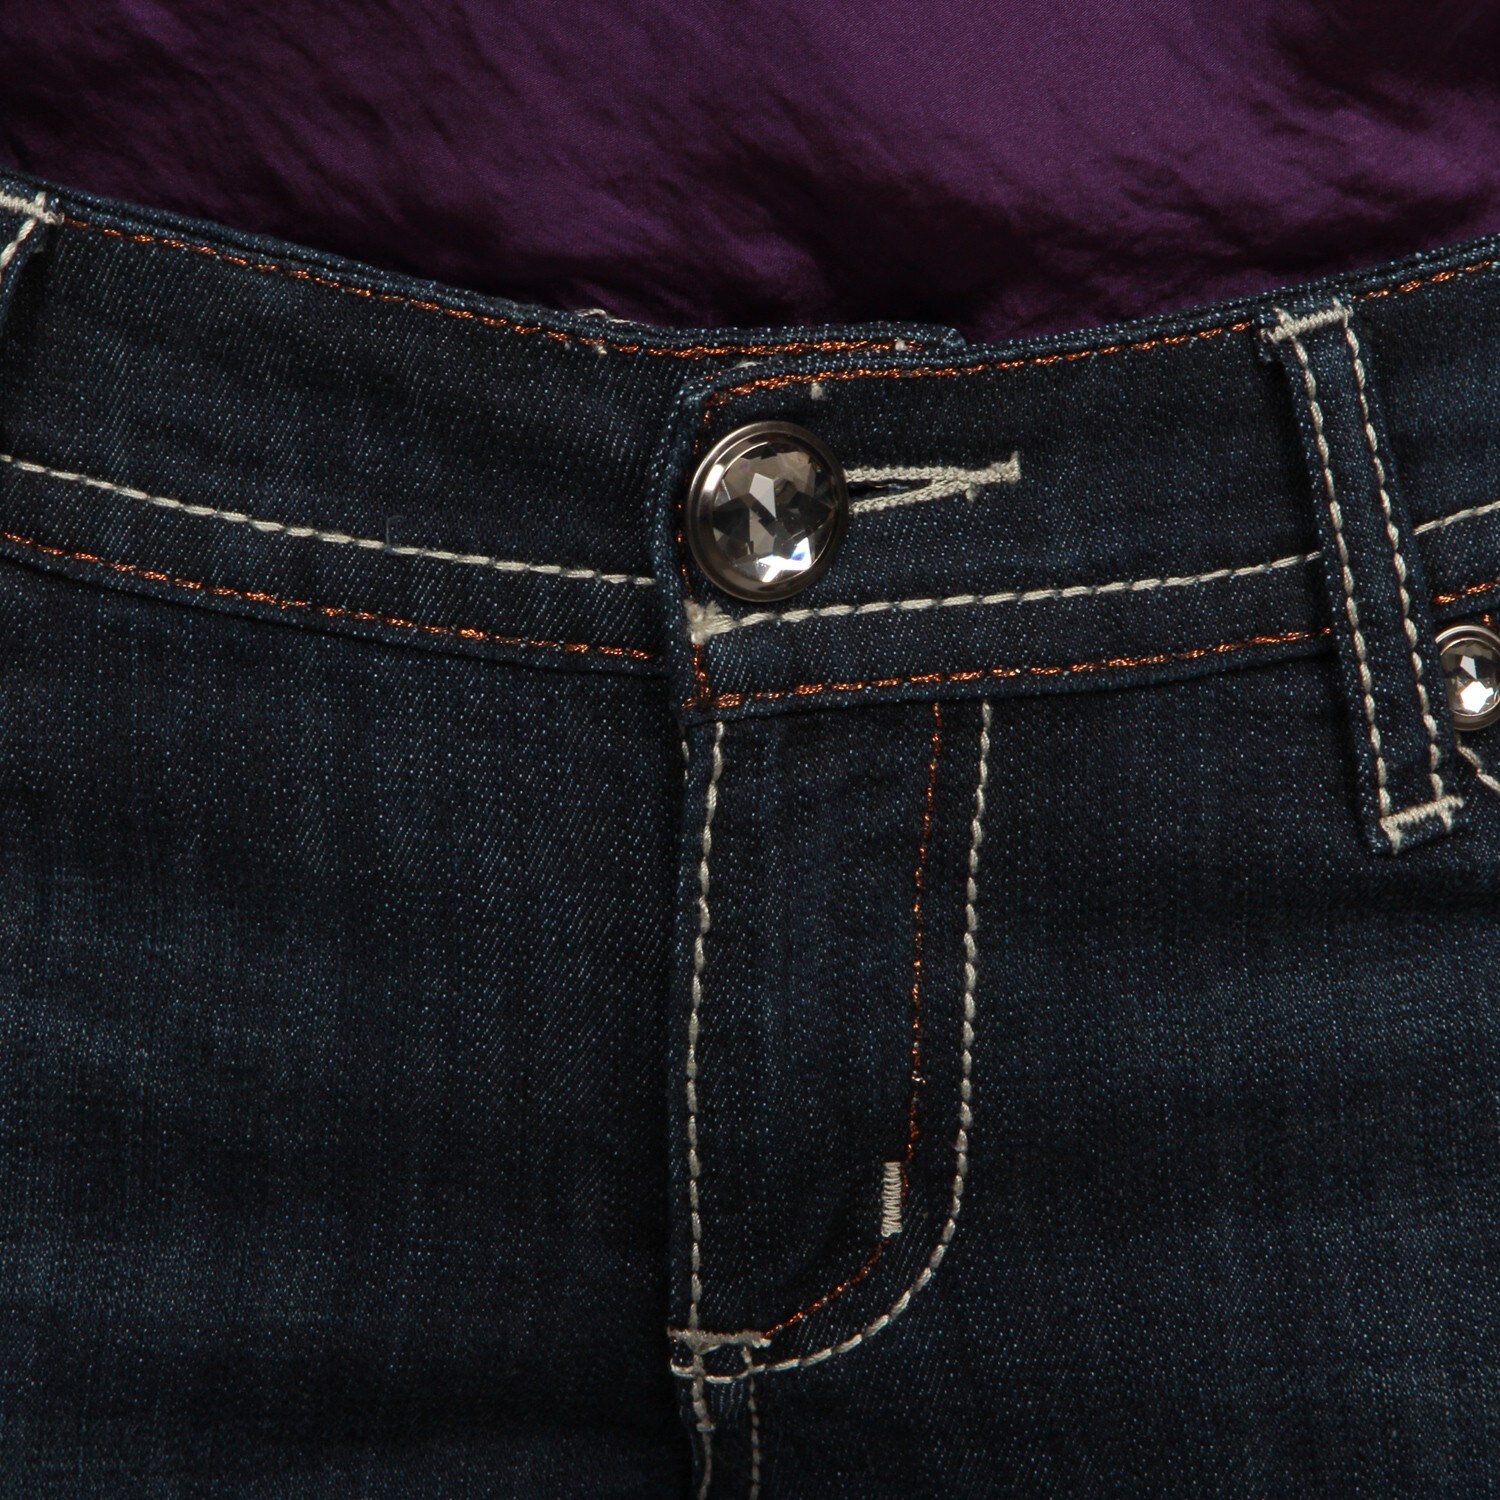 plus size rhinestone embellished jeans